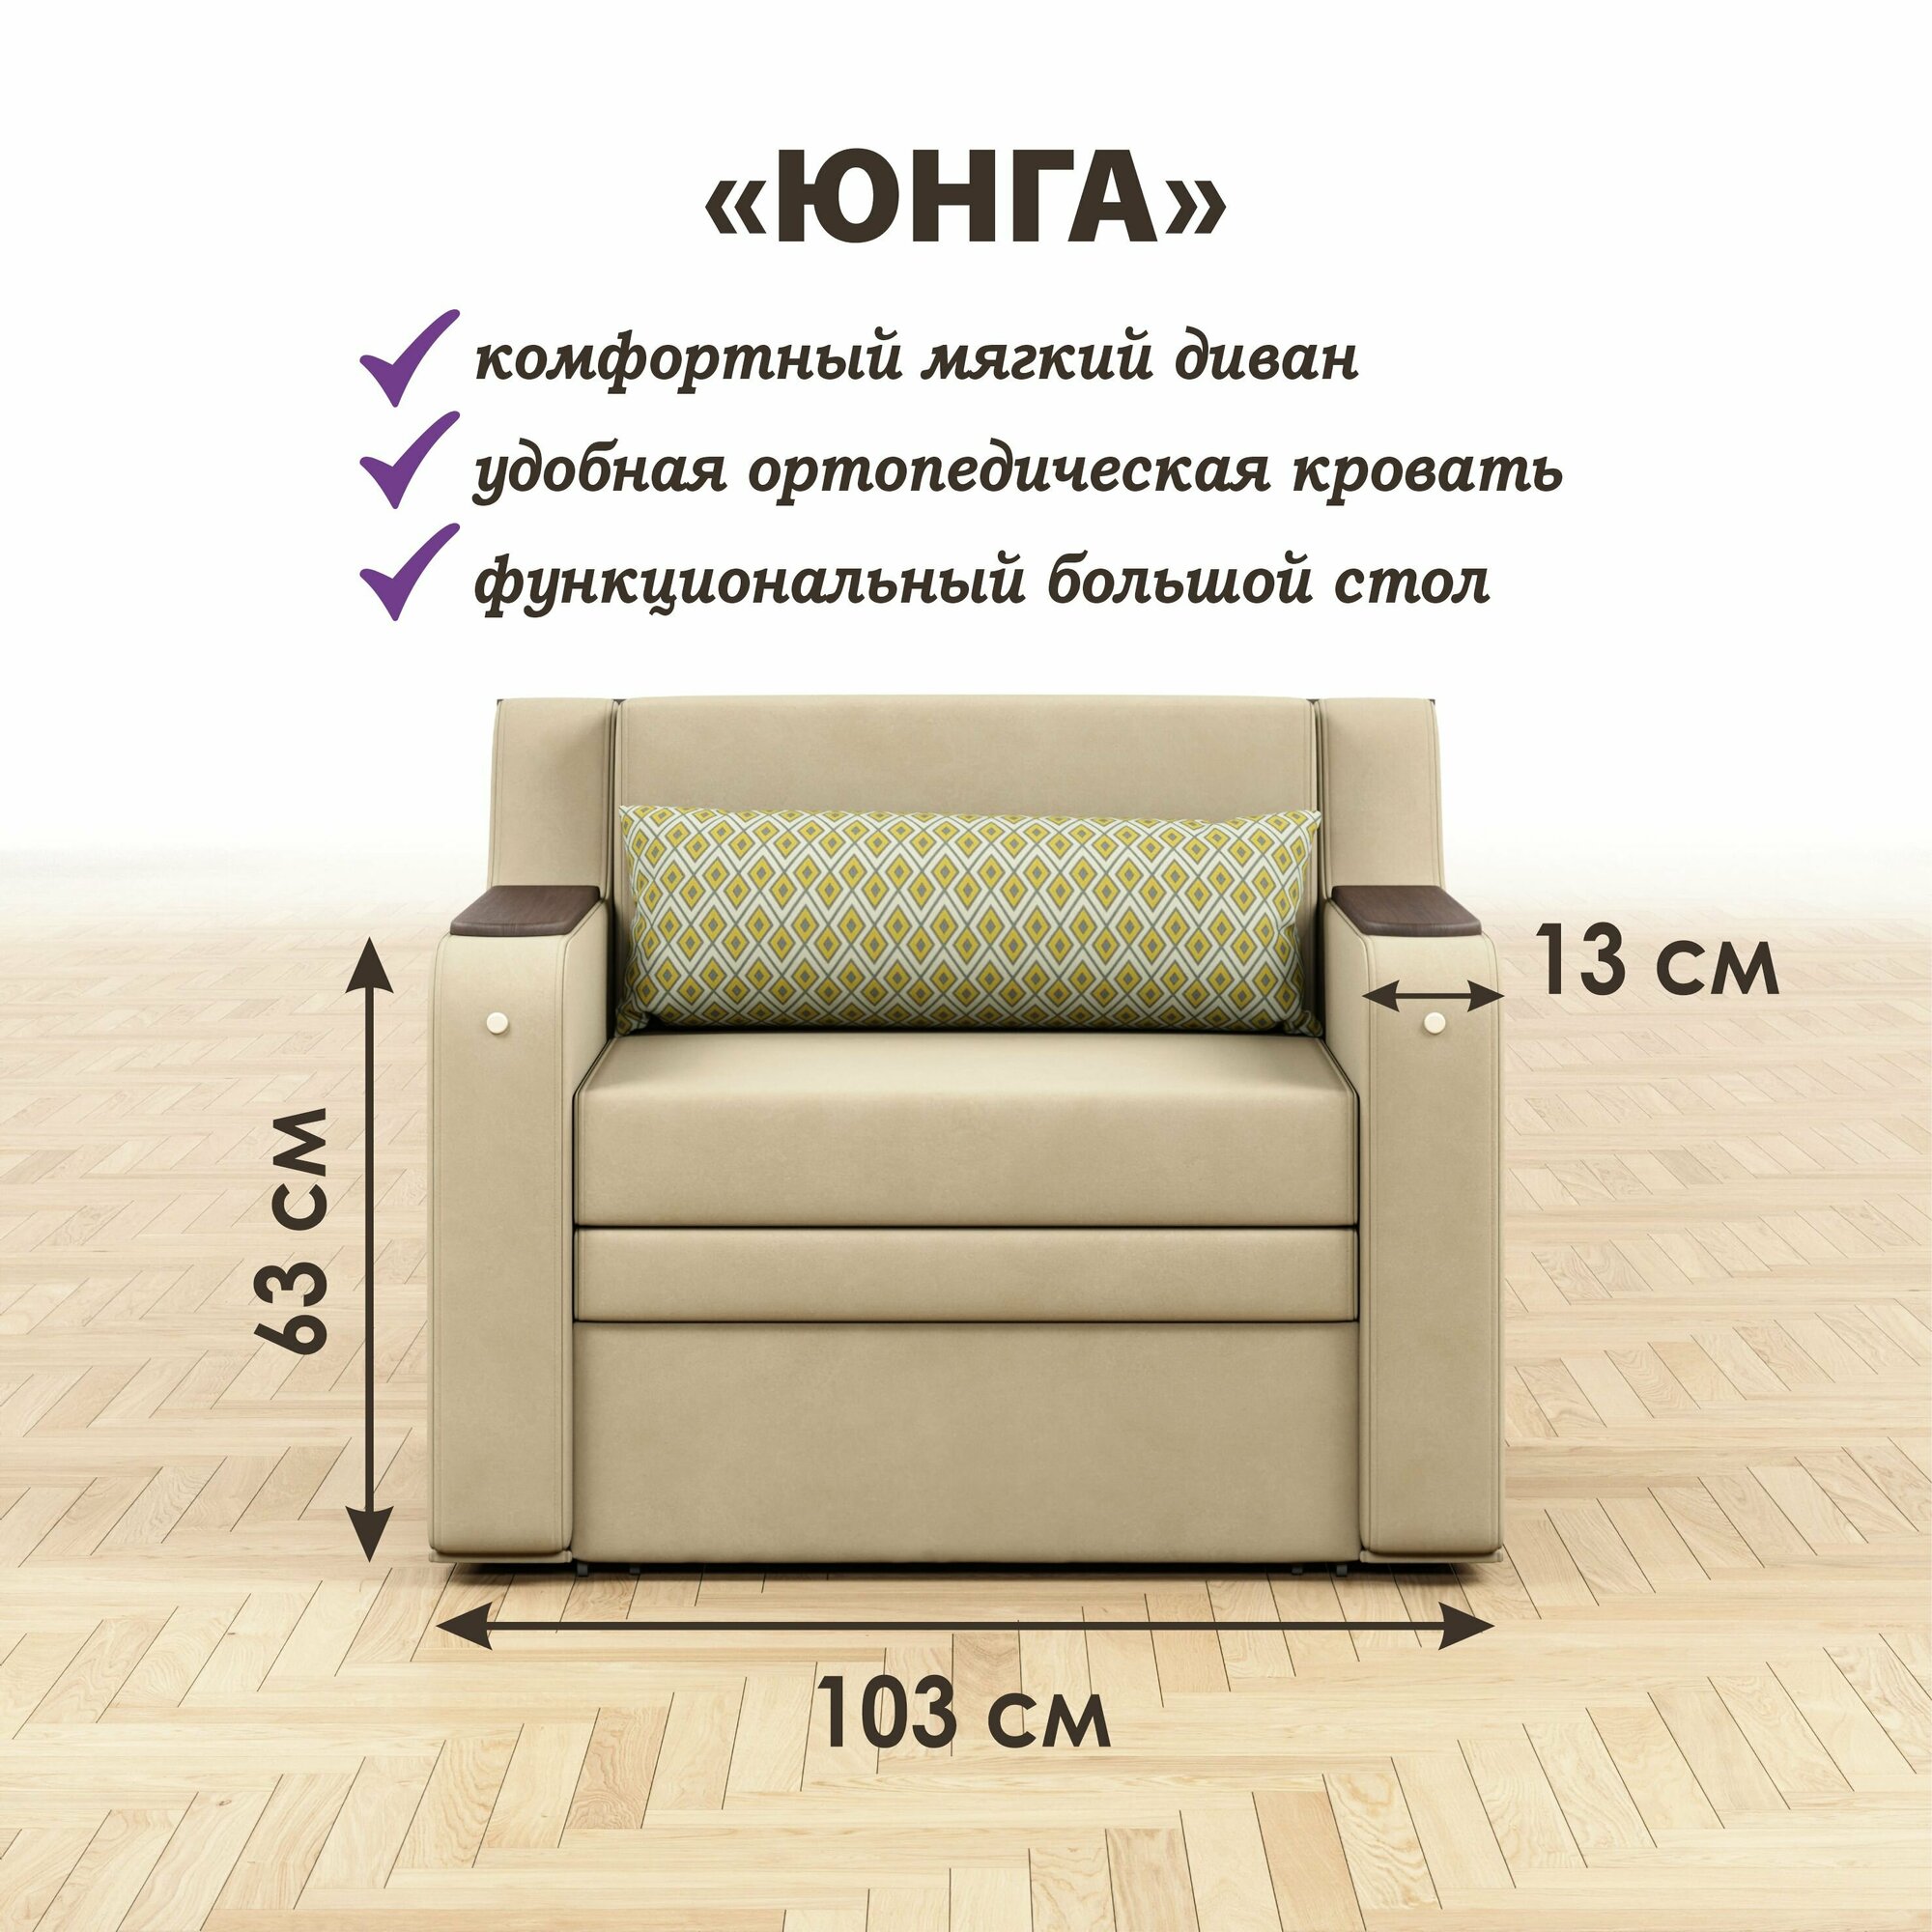 Раскладной диван-кровать GOSTIN Юнга мини 103х82х82, выкатной диван трансформер 3 в 1 для кухни, детский диван - фотография № 2